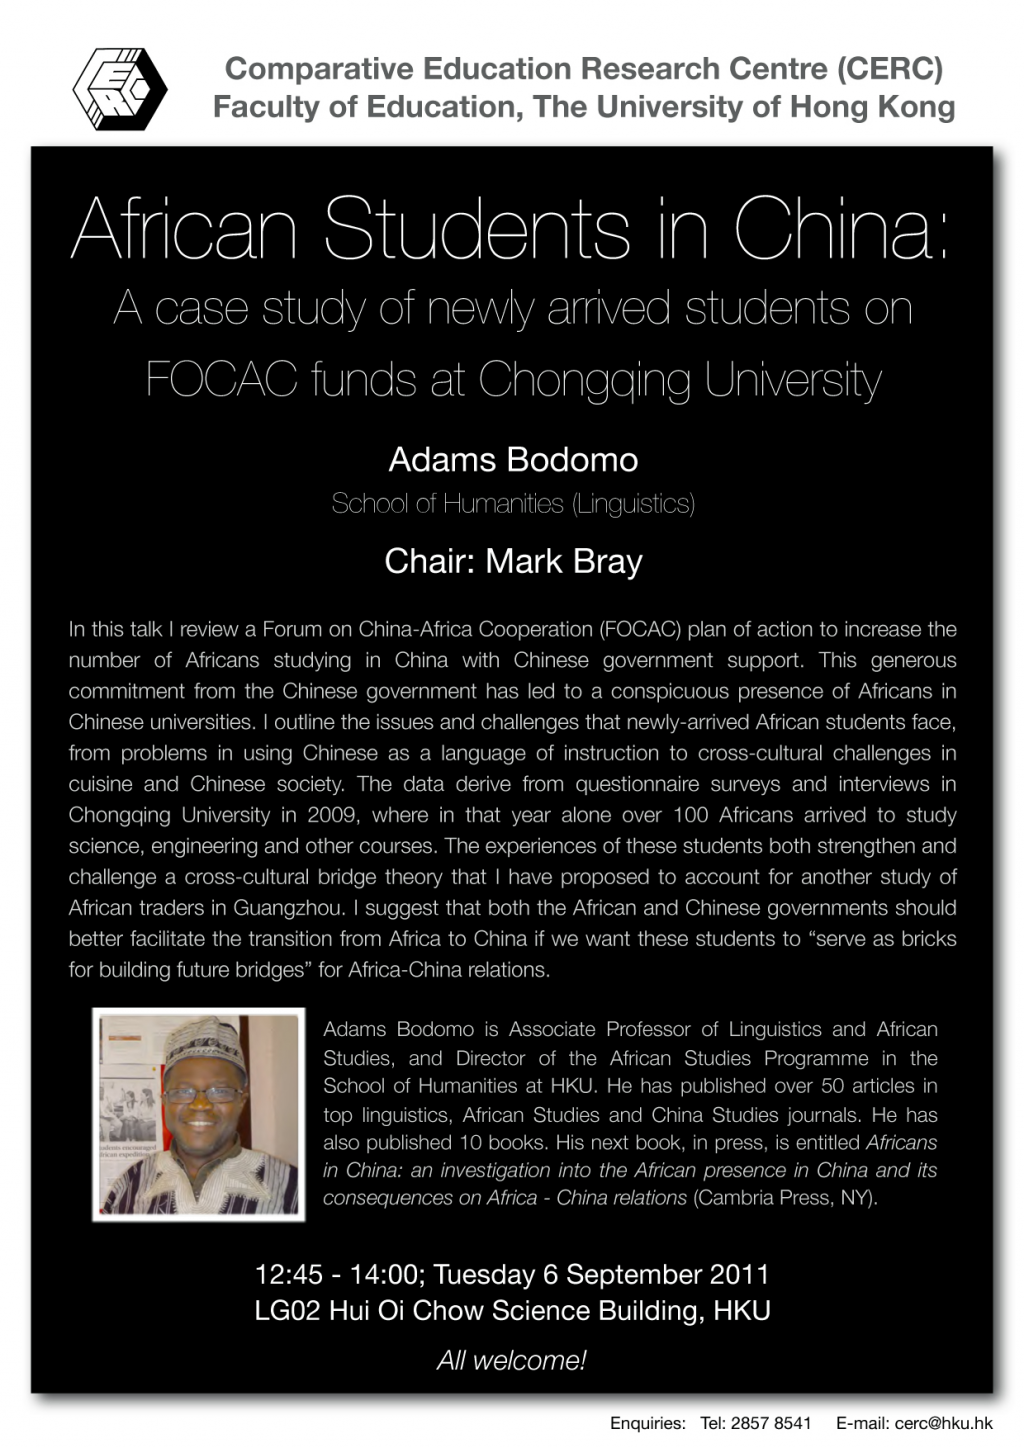 Seminar: African Studies in China